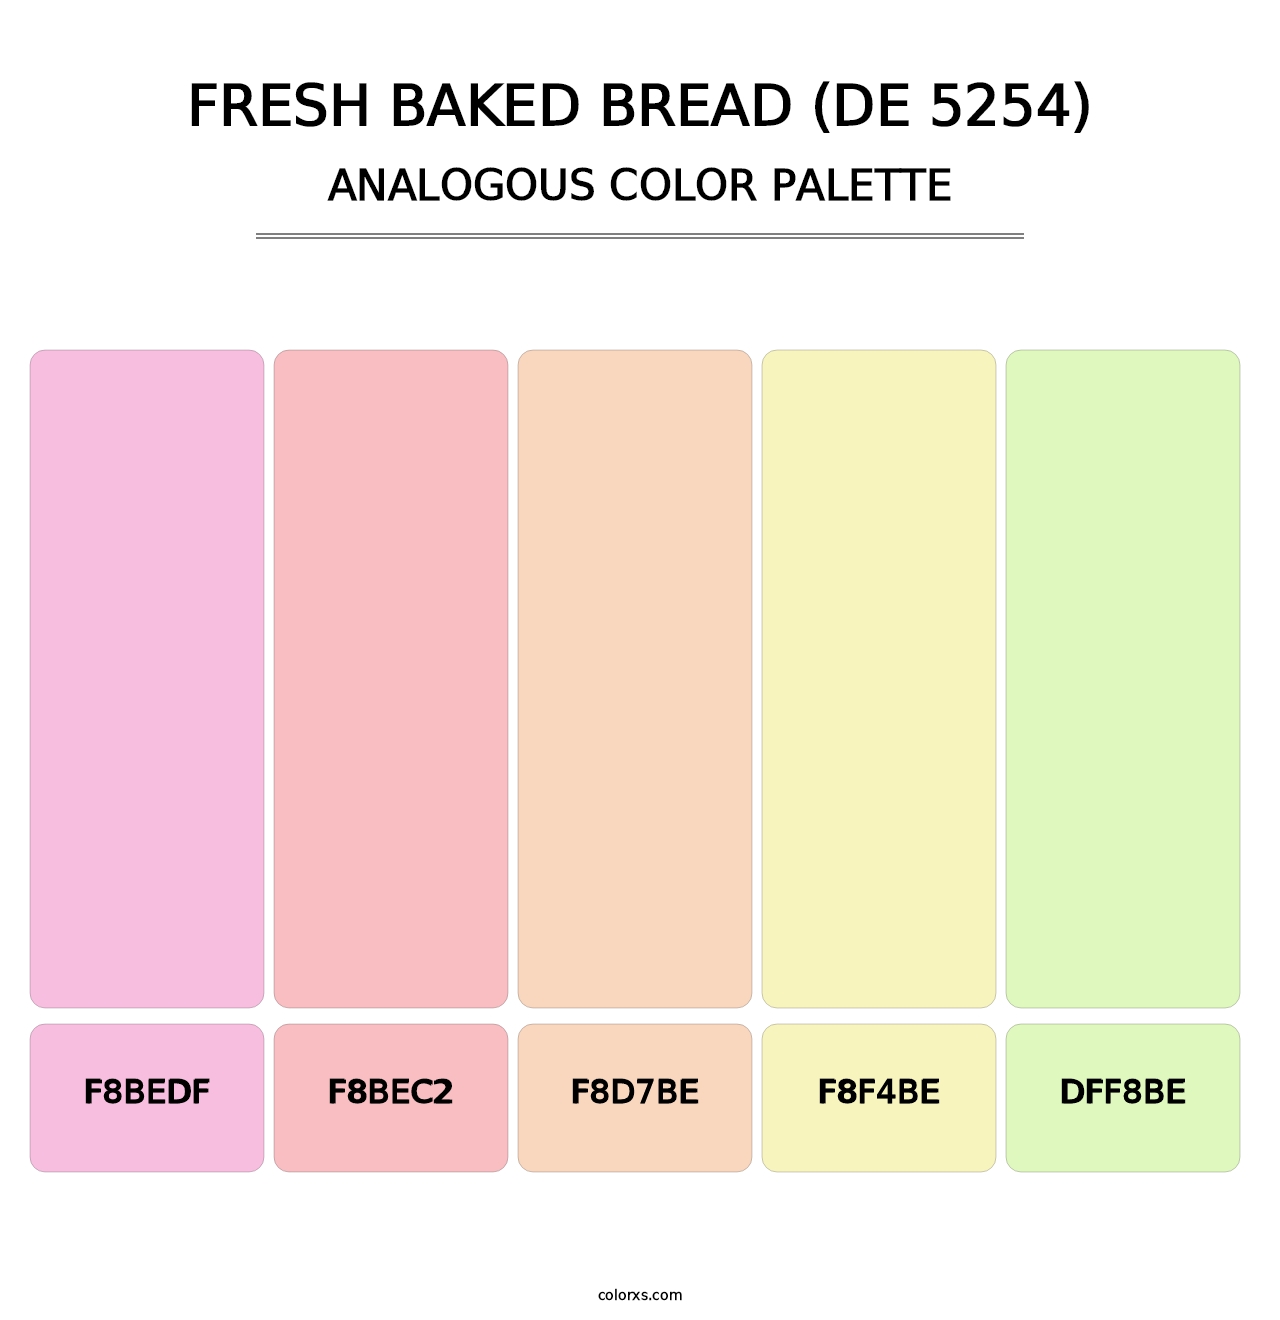 Fresh Baked Bread (DE 5254) - Analogous Color Palette